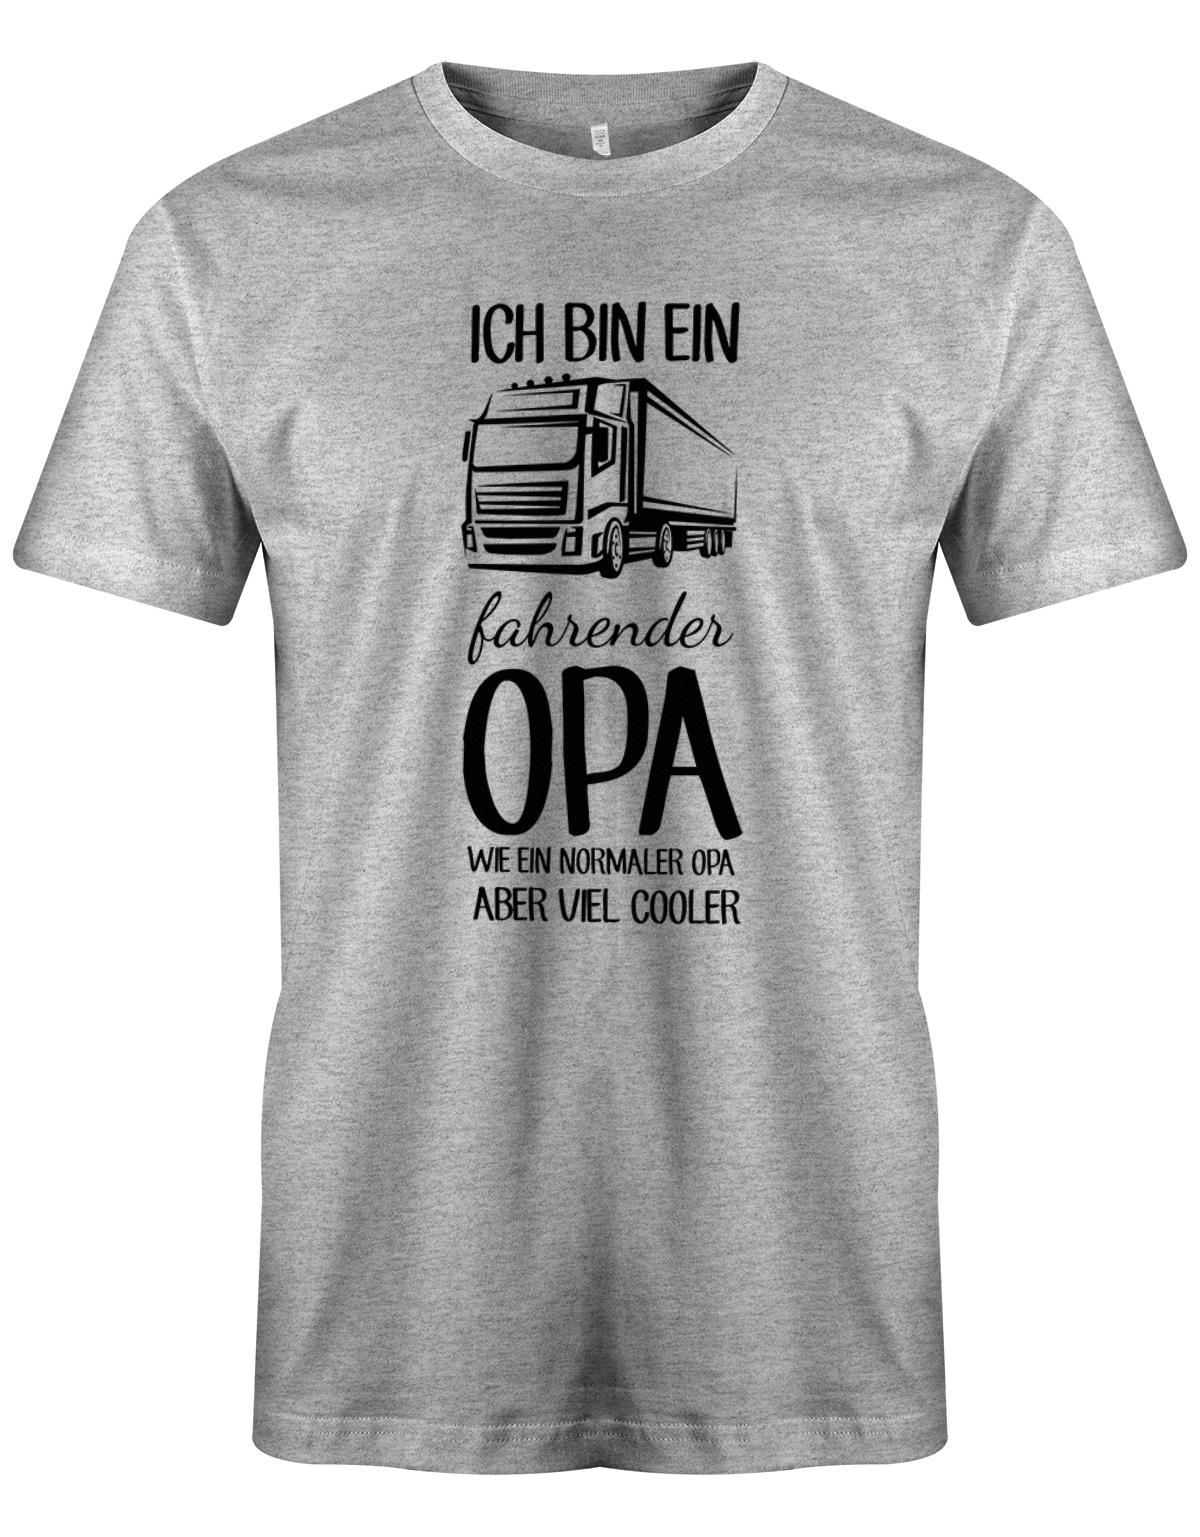 Ich bin ein LKW fahrender Opa wie ein normaler Opa aber viel cooler - Kraftfahrer - Herren T-Shirt Gau